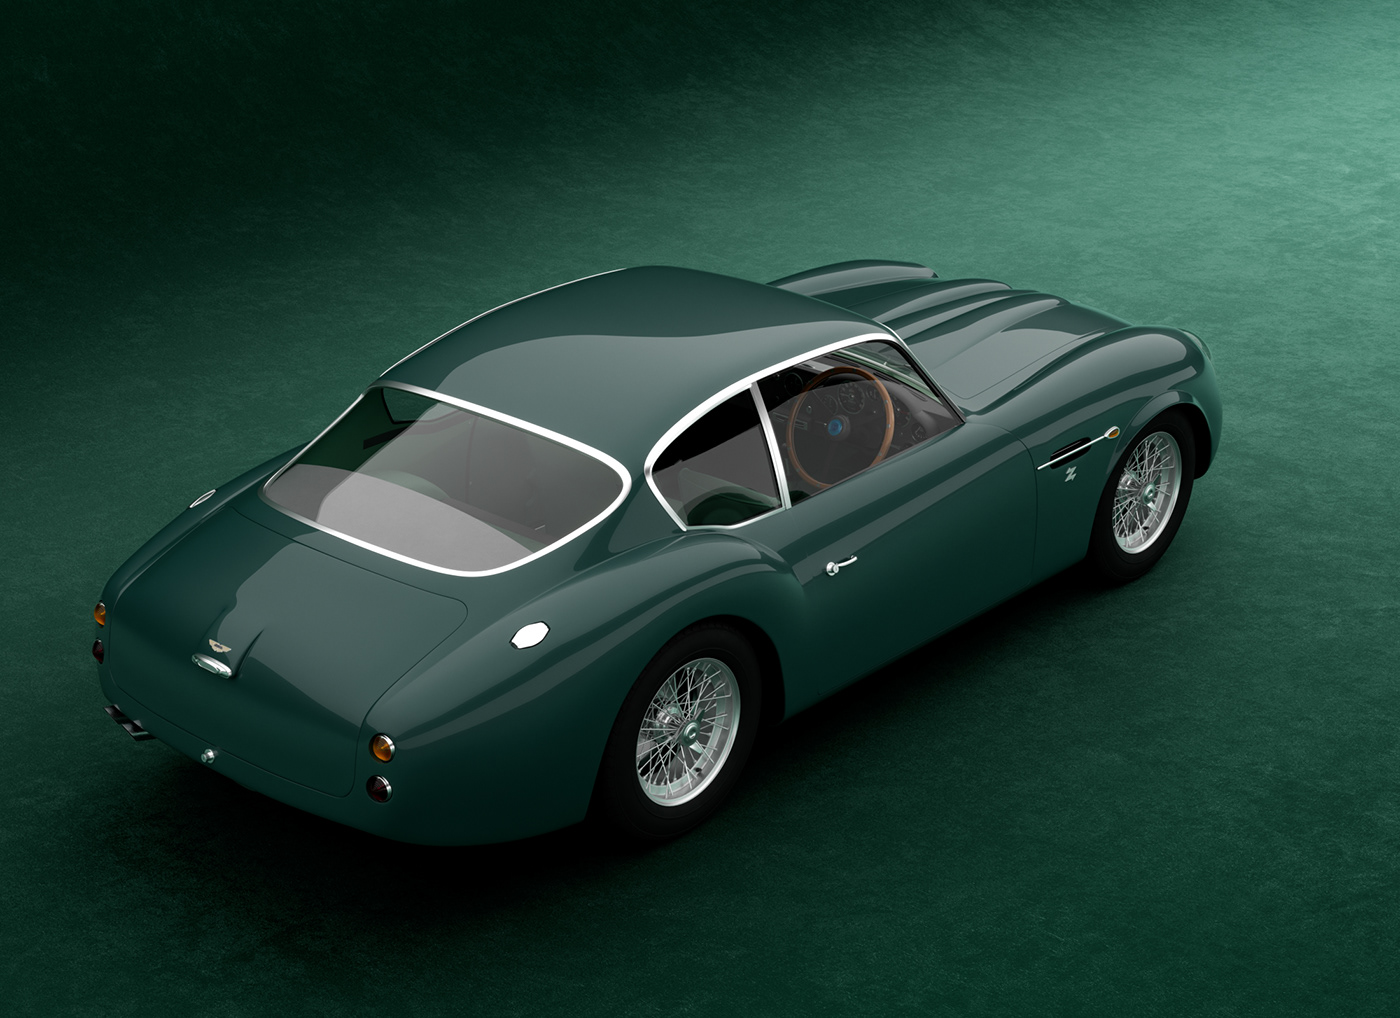 3D 3dmodel car CGI free model product Render rendering visual